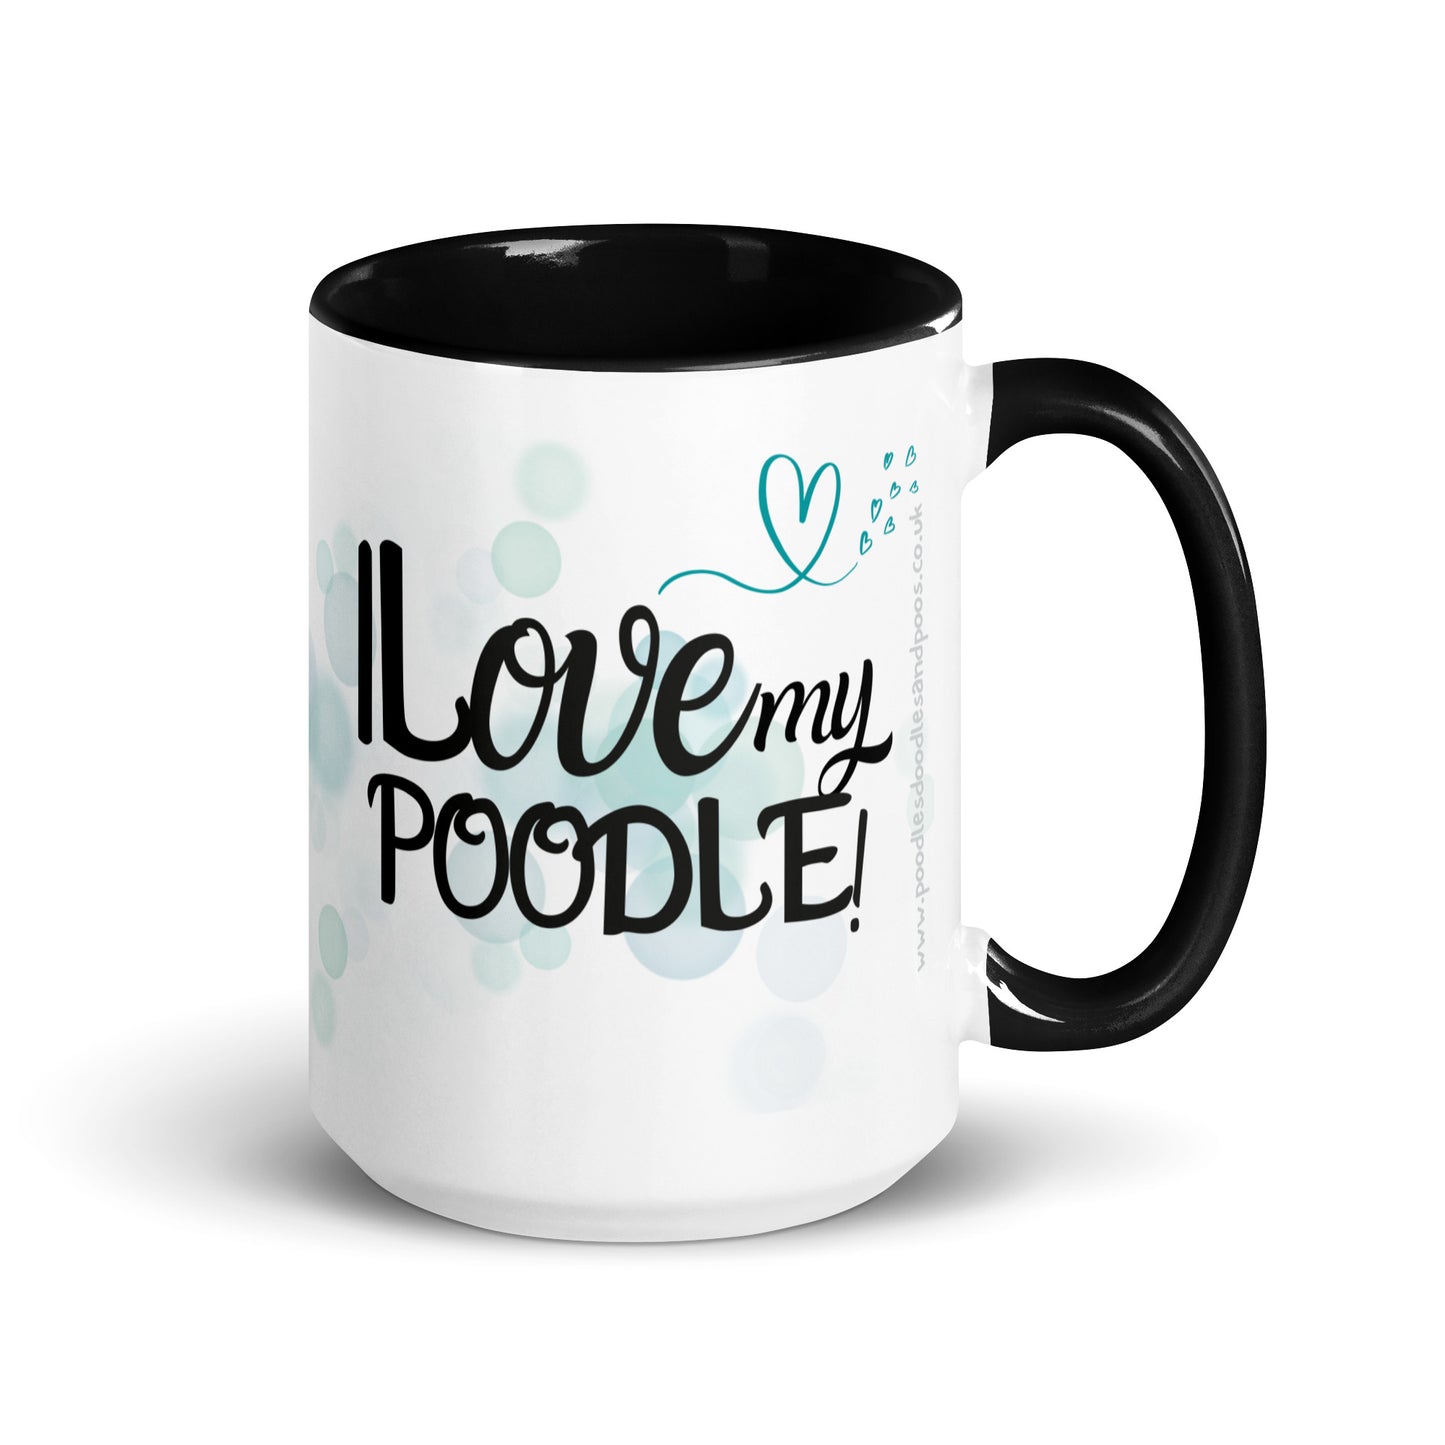 "I Love my..." mug with black inside - golden Poodle